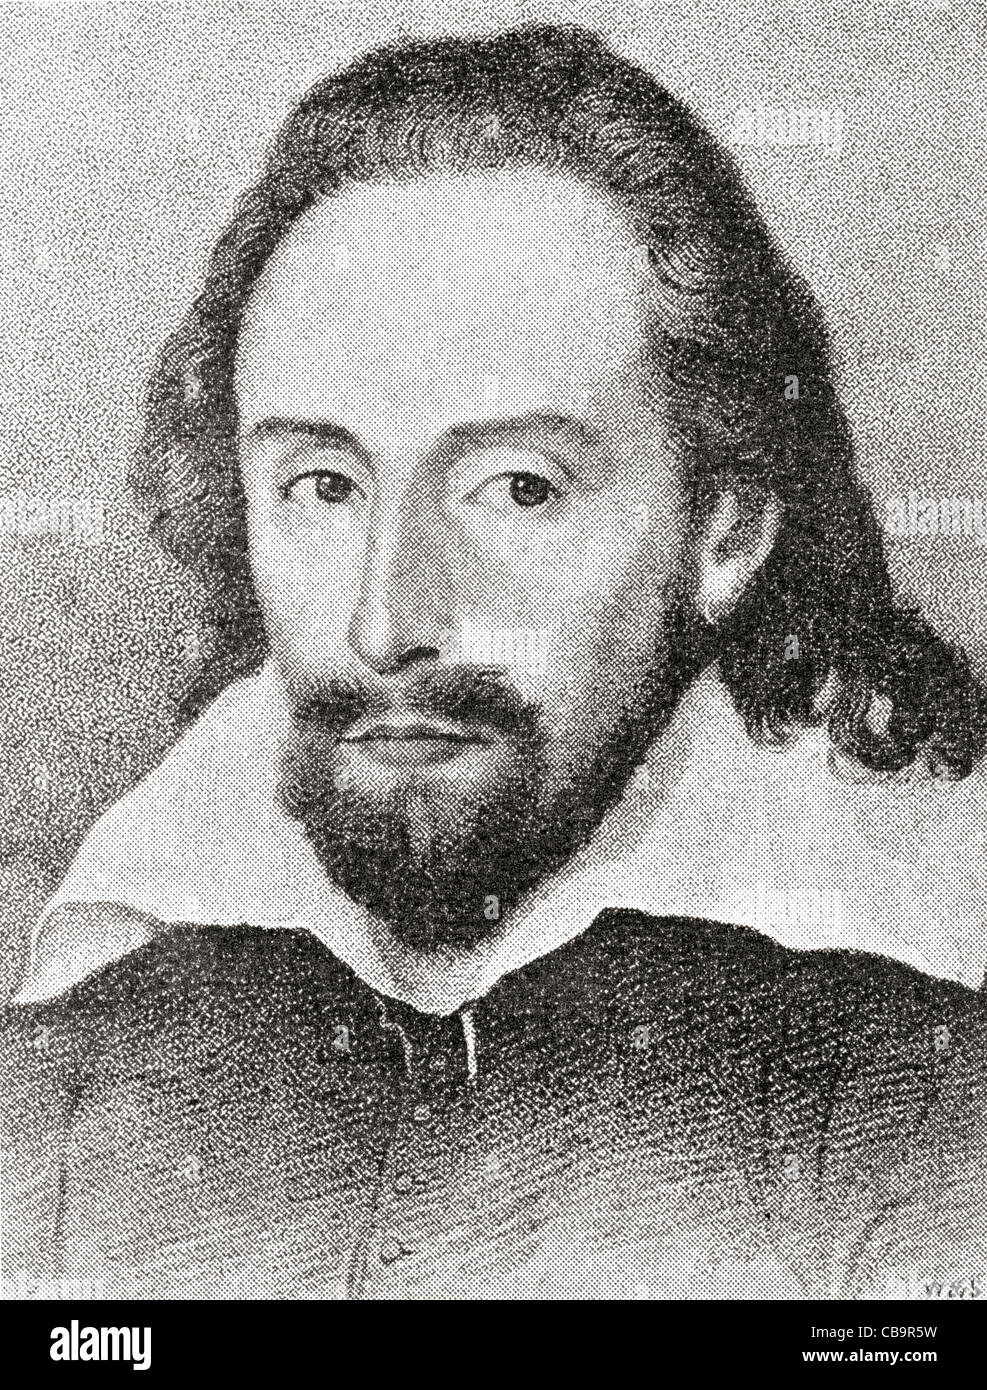 William Shakespeare, 1564-1616. Englischer Dichter und Dramatiker. Dieses Porträt ist bekannt als der Dunford Gestalt. Stockfoto